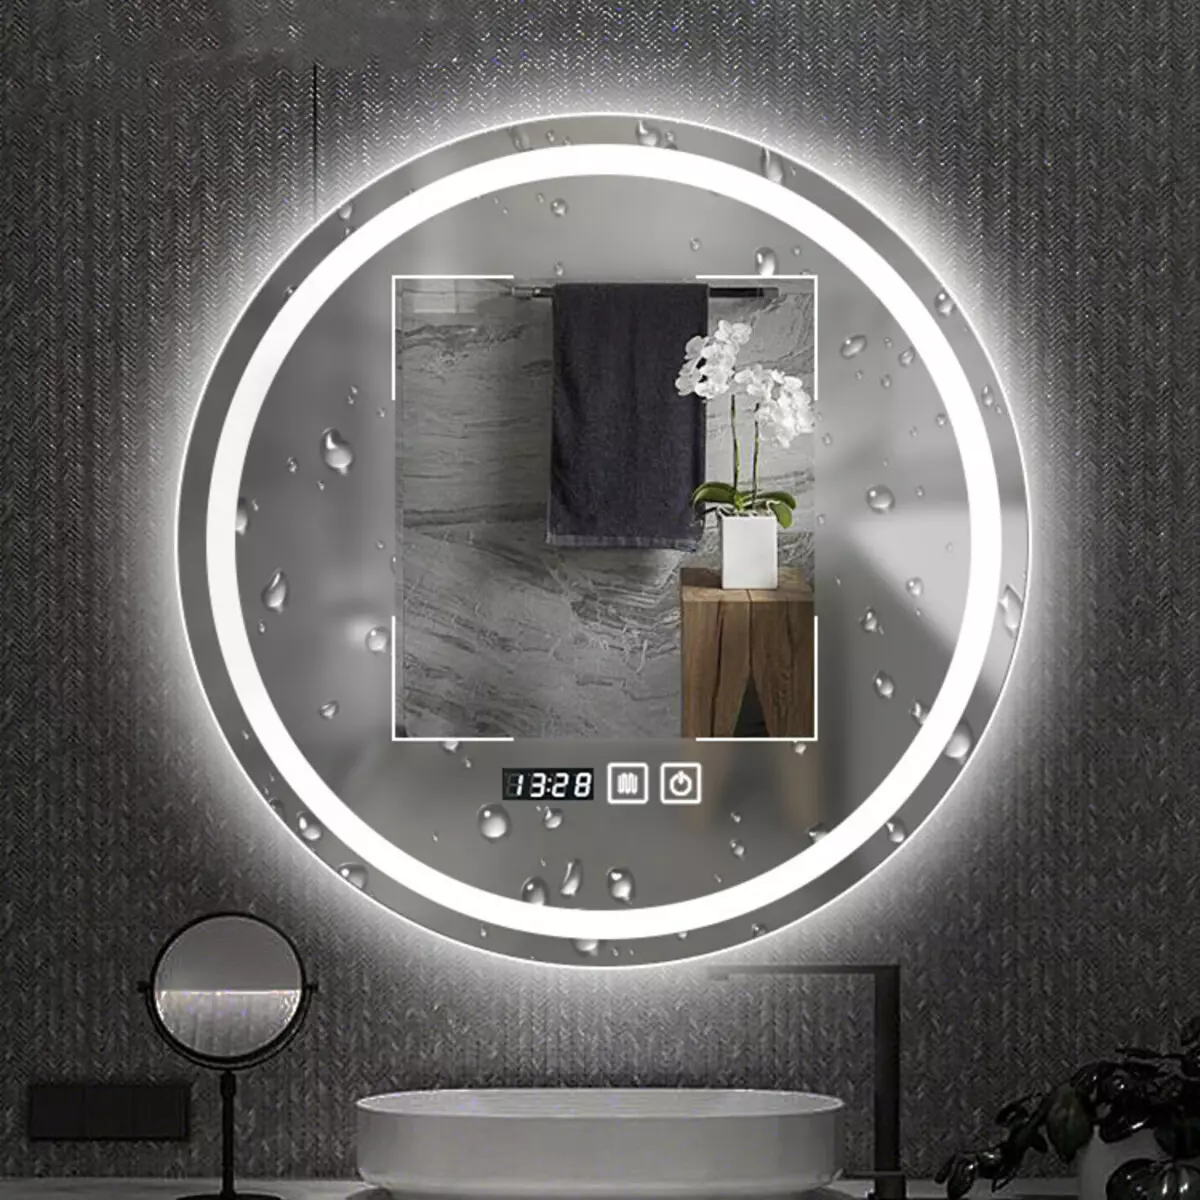 Miroir rond dans la salle de bain: miroirs design dans un cadre en bois, miroirs ronds de couleur noire et autre pour la salle de bain 10427_23